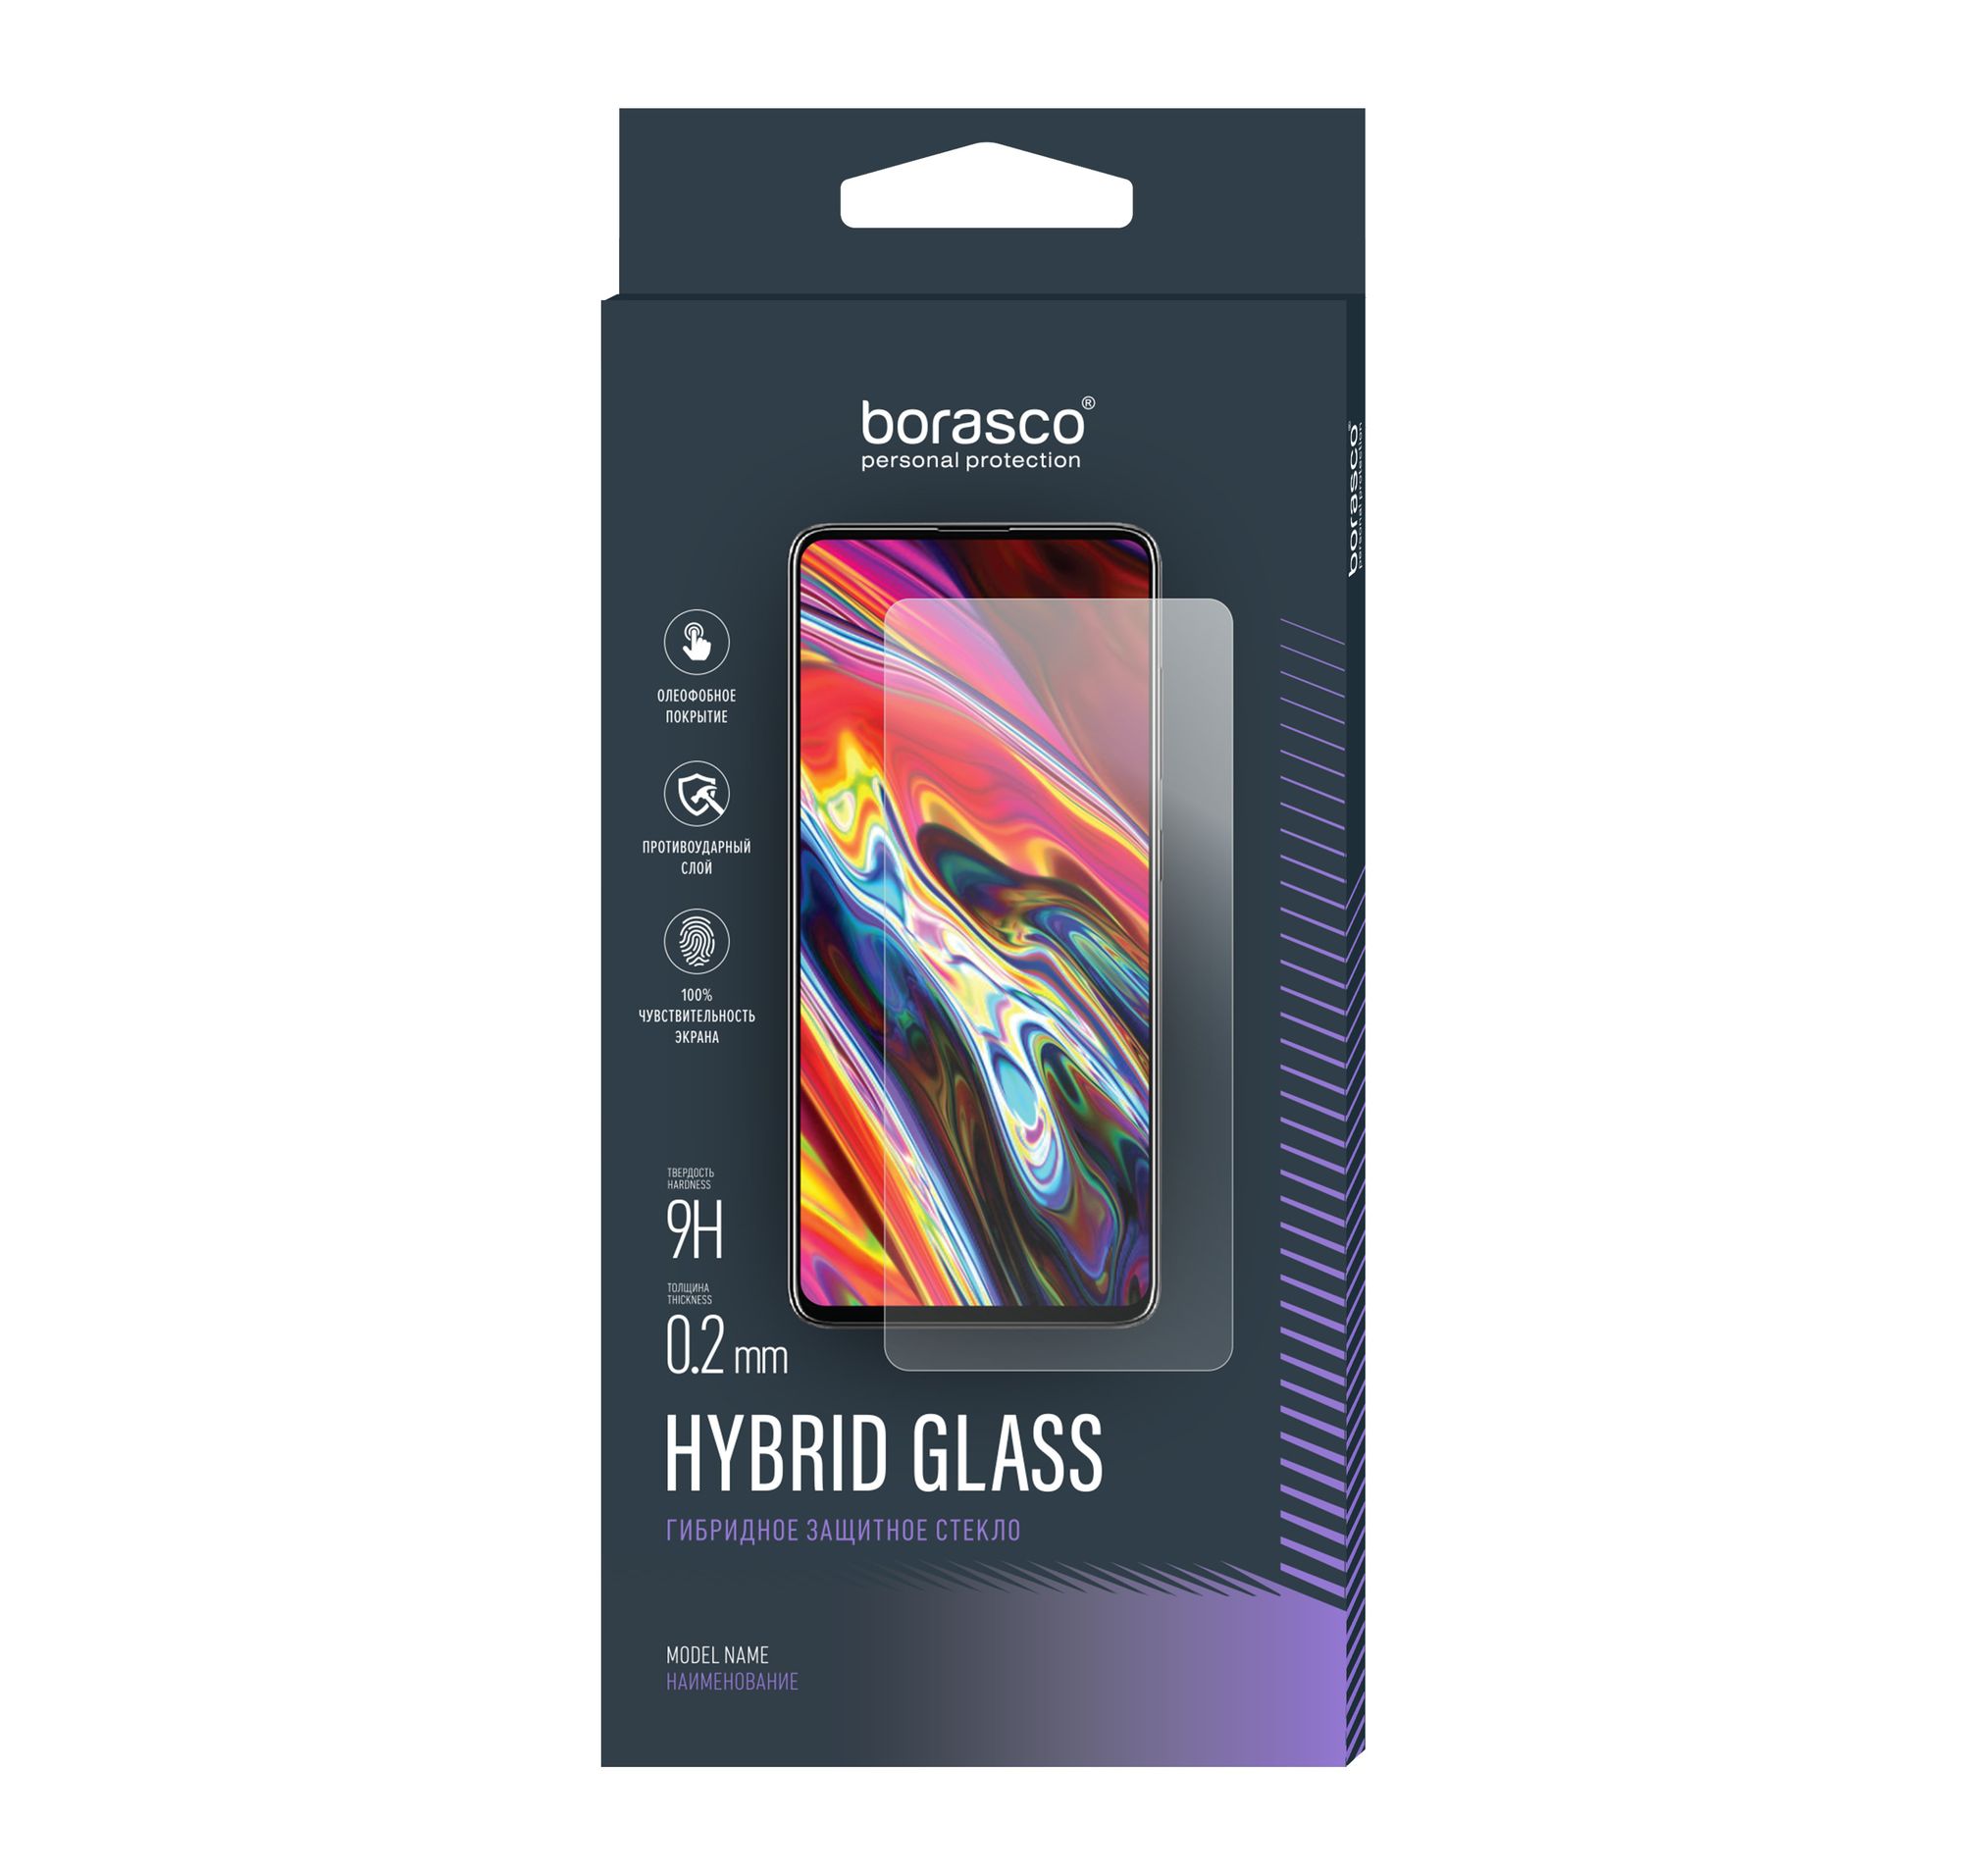 Стекло защитное Hybrid Glass VSP 0,26 мм для iPhone 6 Plus/6S Plus 2 шт 9d полное покрытие стекло для iphone 6s защитное стекло на iphone 6 6s plus 6plus 6splus защитная пленка для экрана